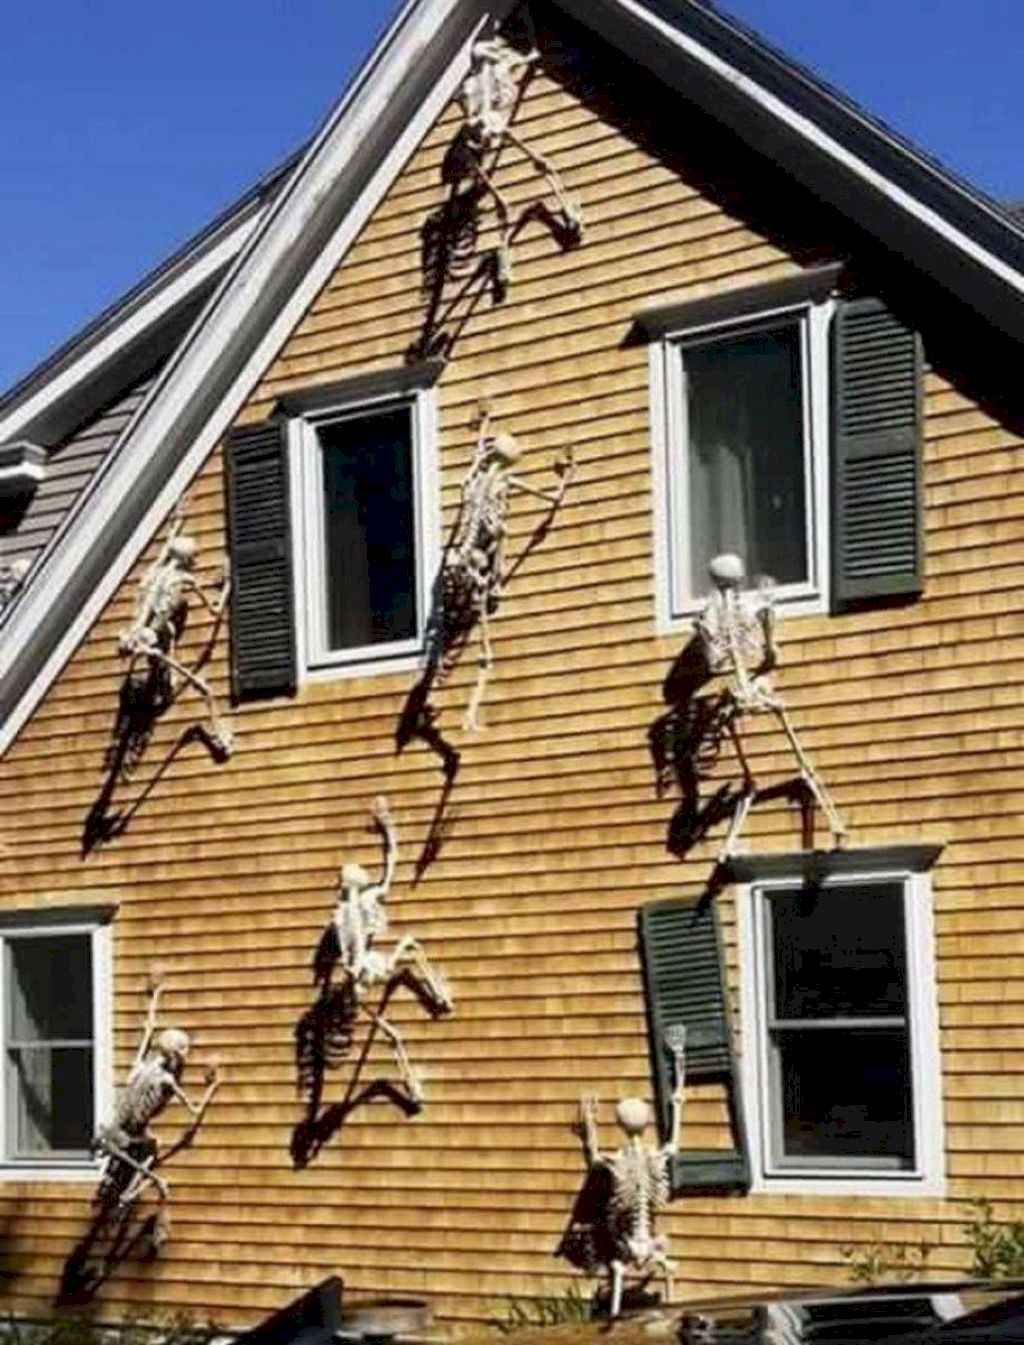 Climbing Skeletons